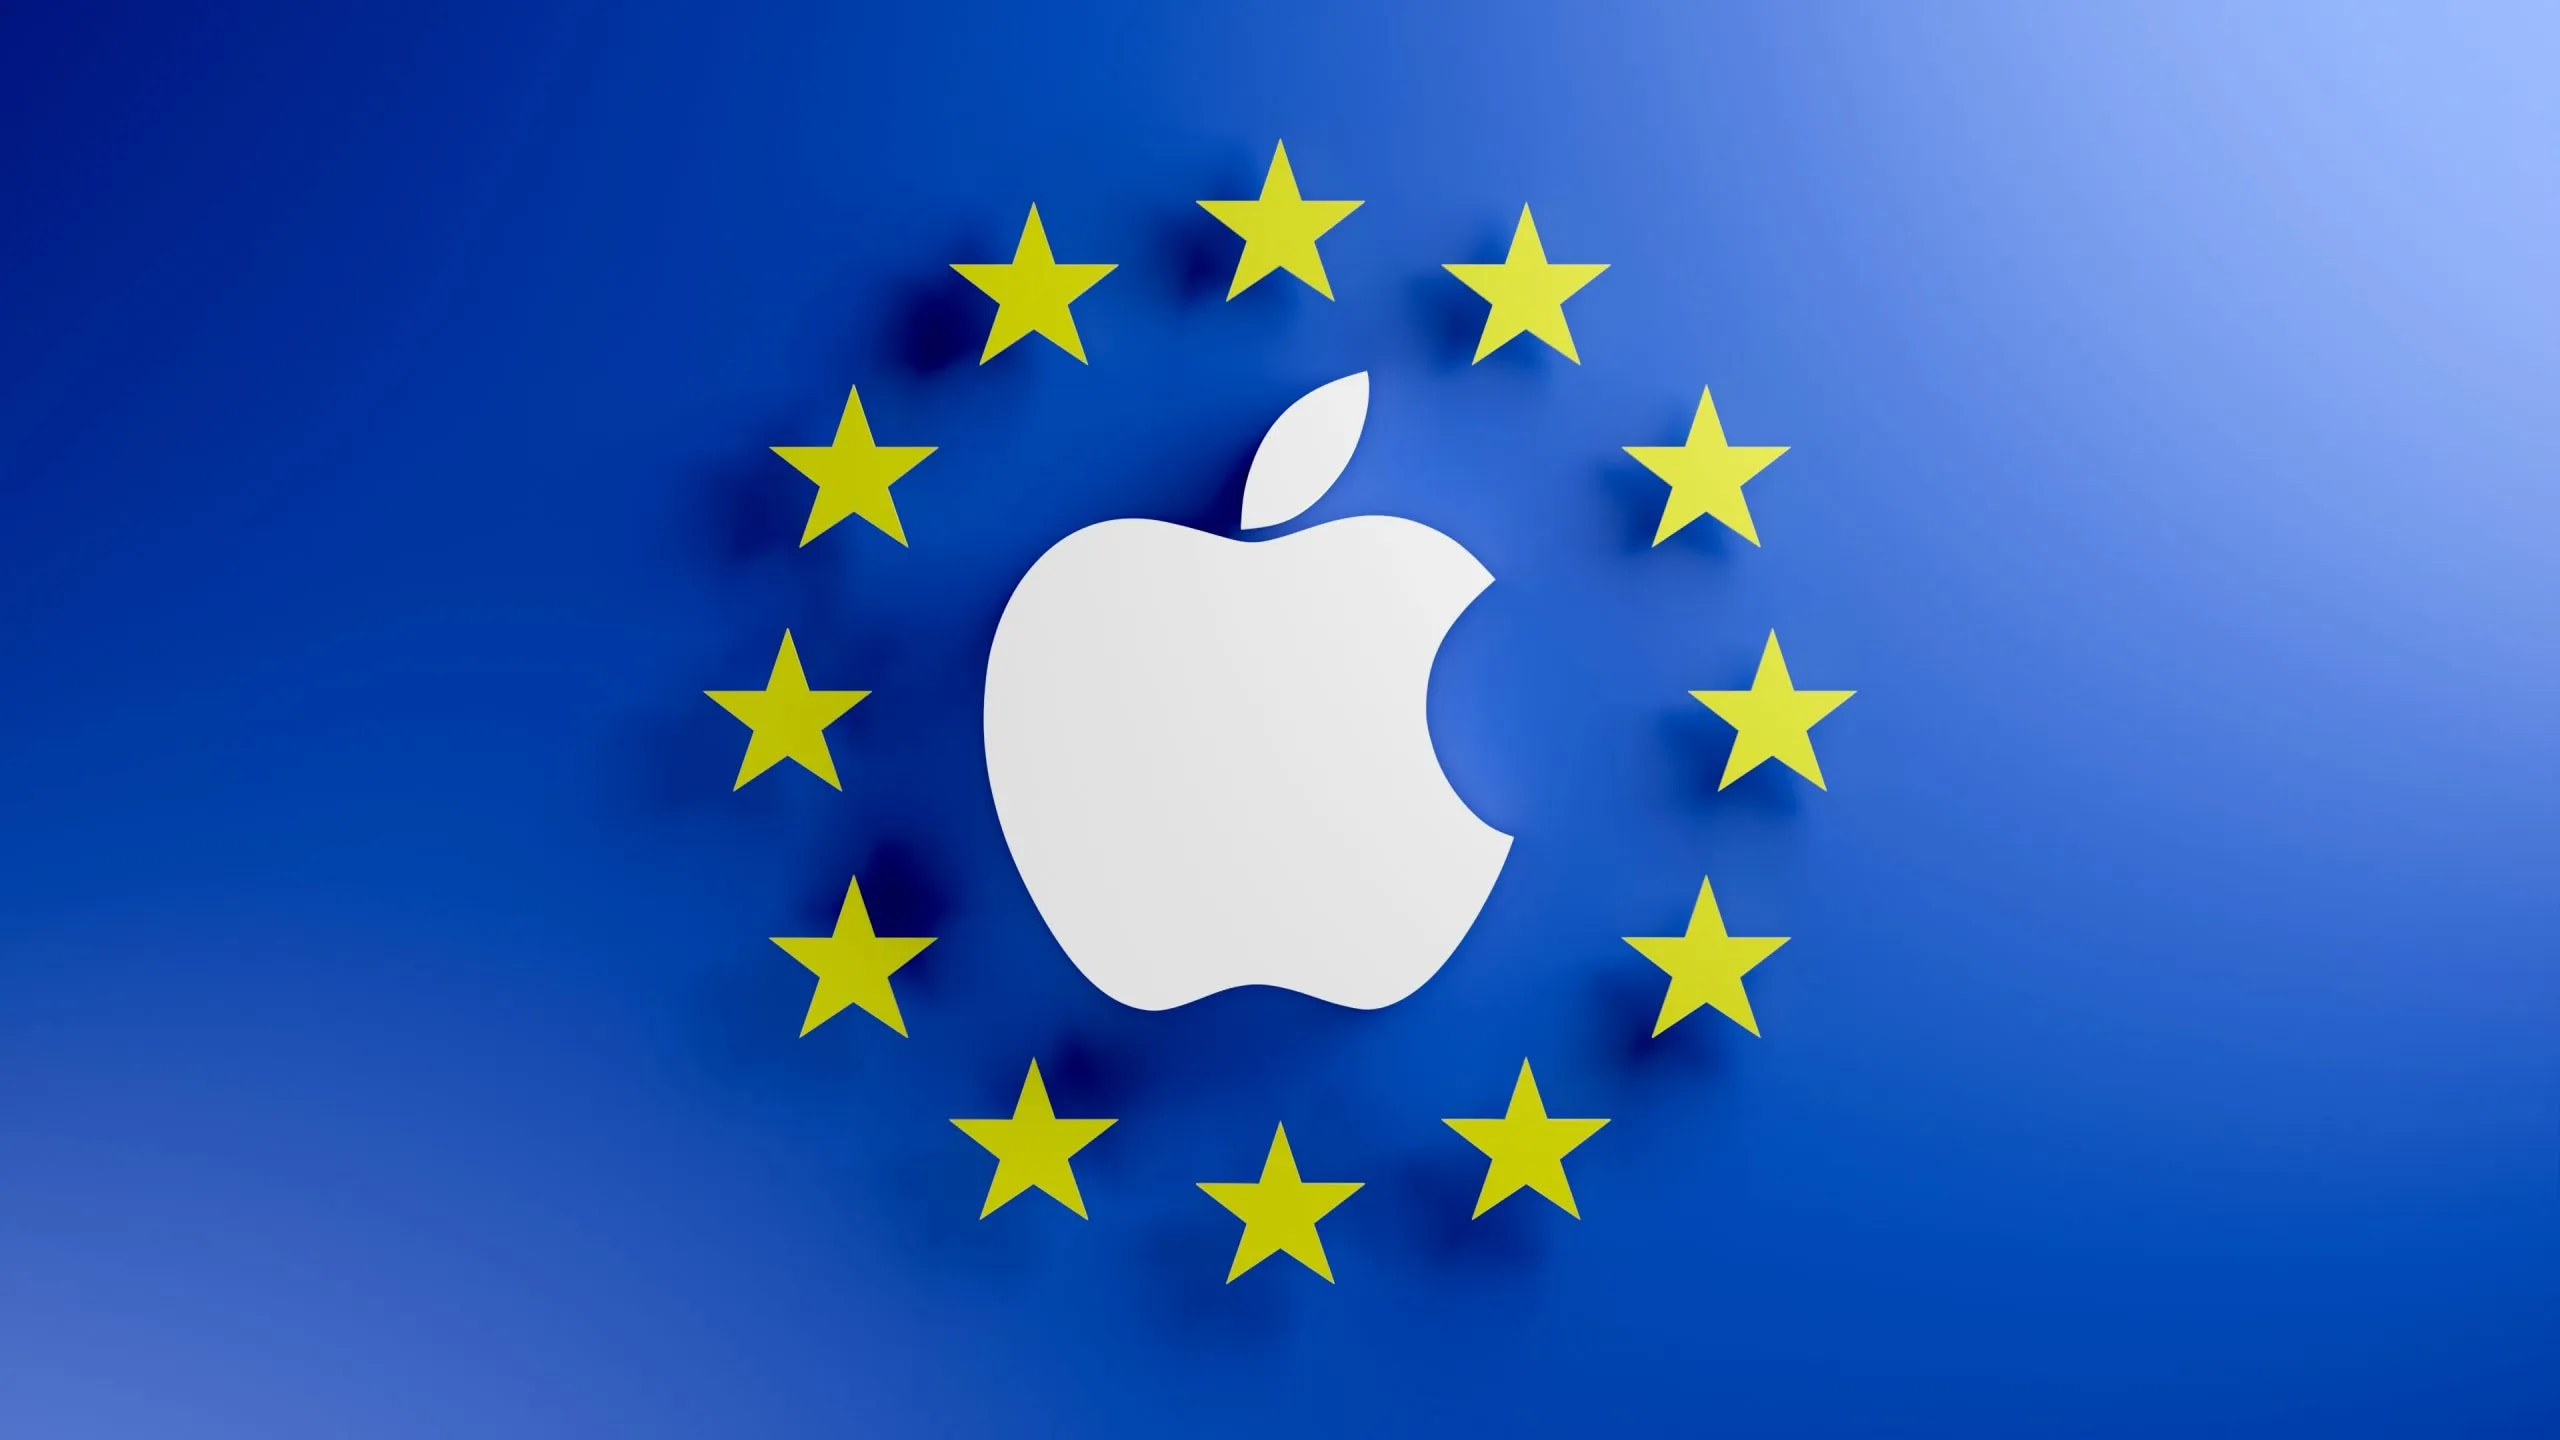 Apple открыла для европейских пользователей iPhone возможность скачивать приложения с вебсайтов